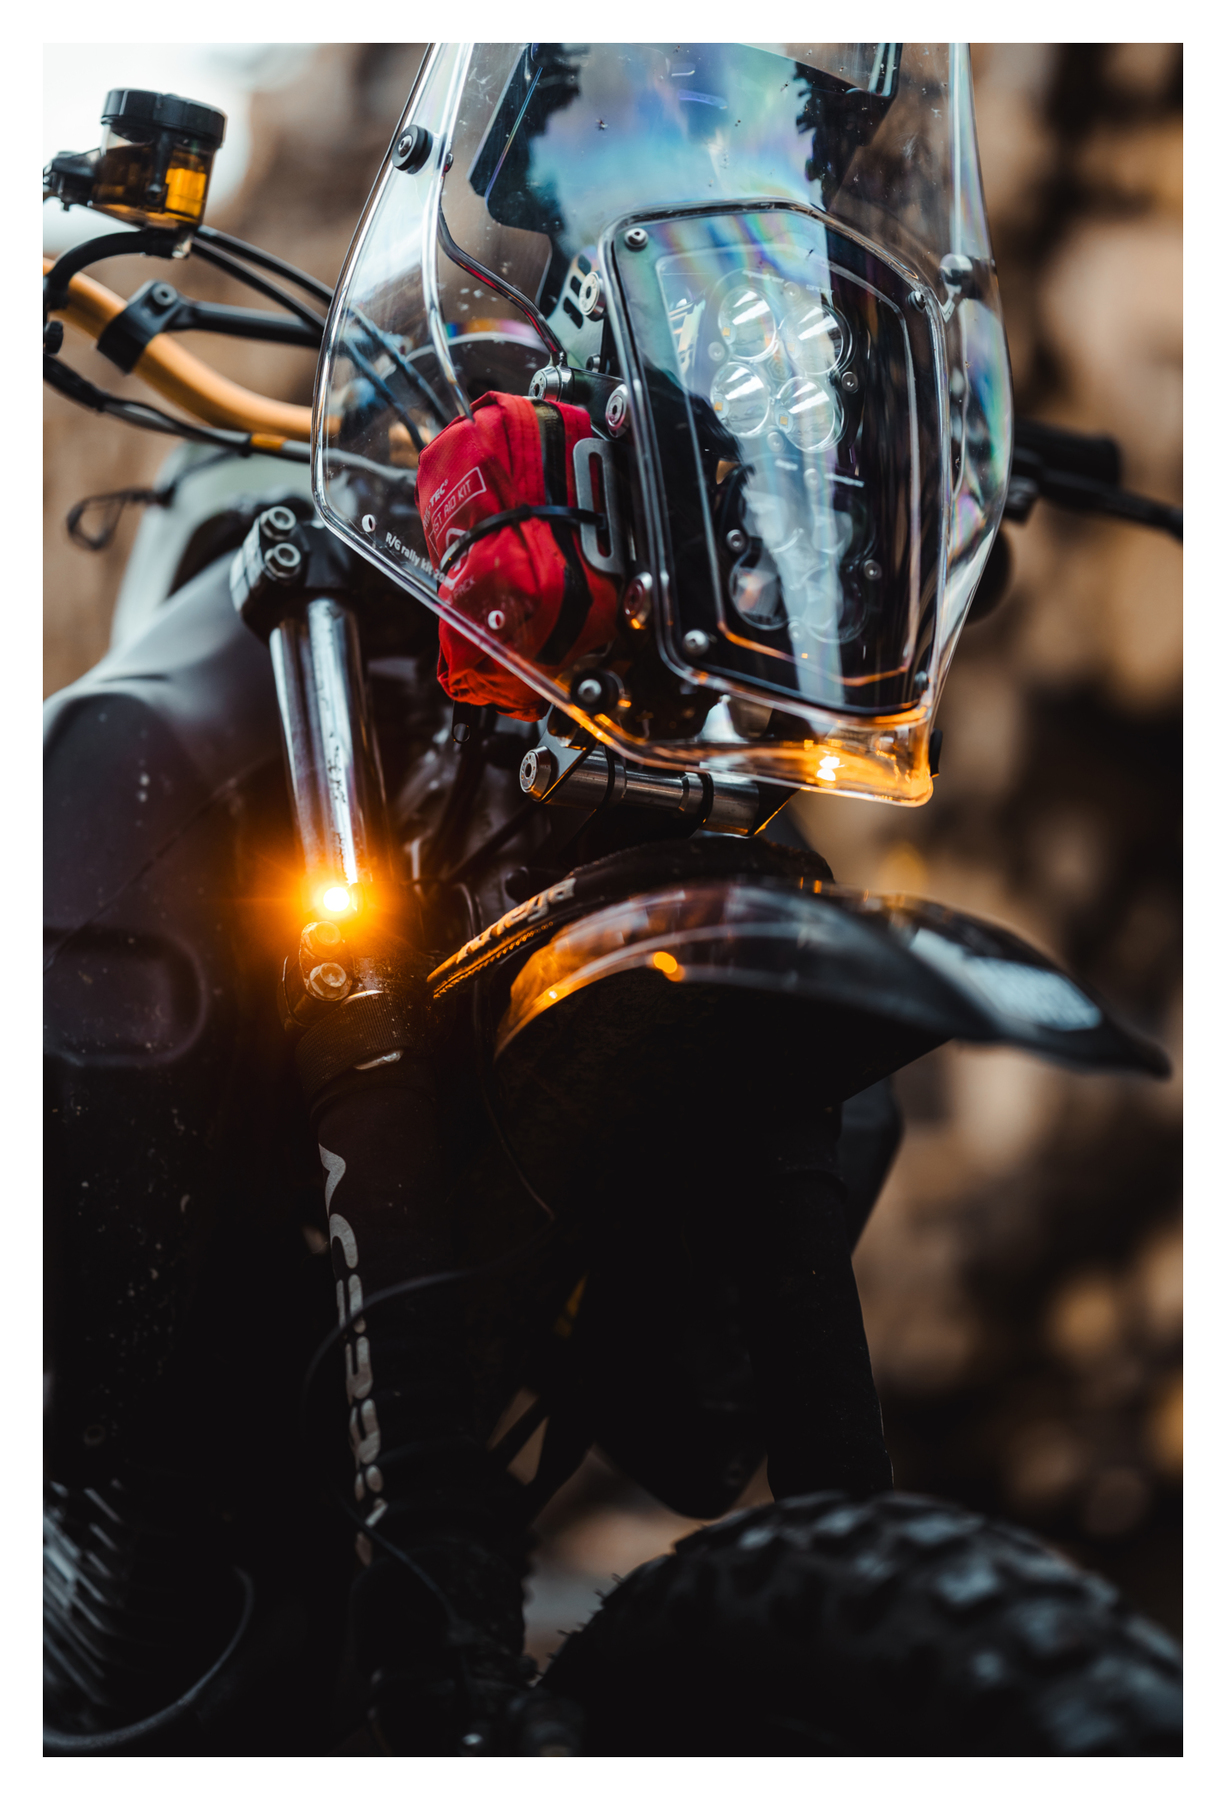 Relais clignotant LED moto gadget - Équipement moto